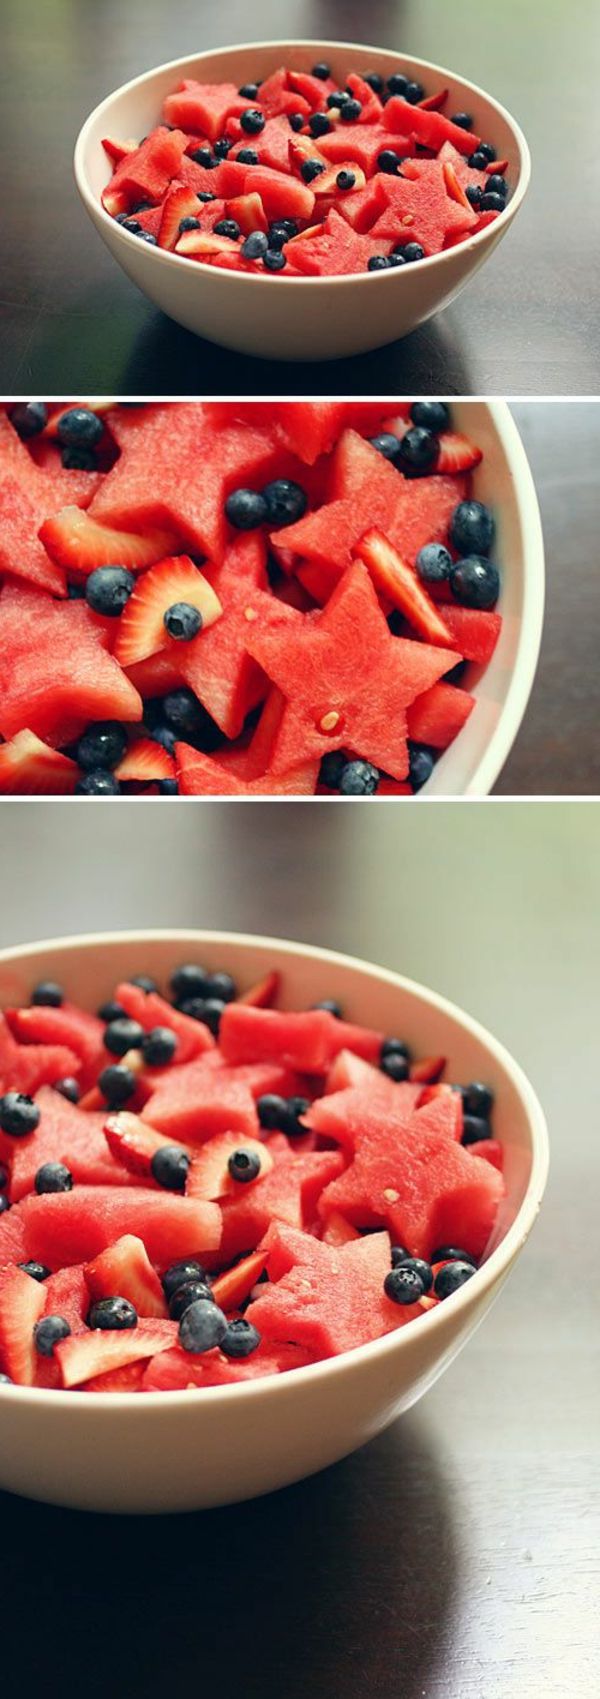 watermeloen-bosbessen-fruitsalade-recept-fruitsalade fruitsalade-dressing-Obstsalat-calorie